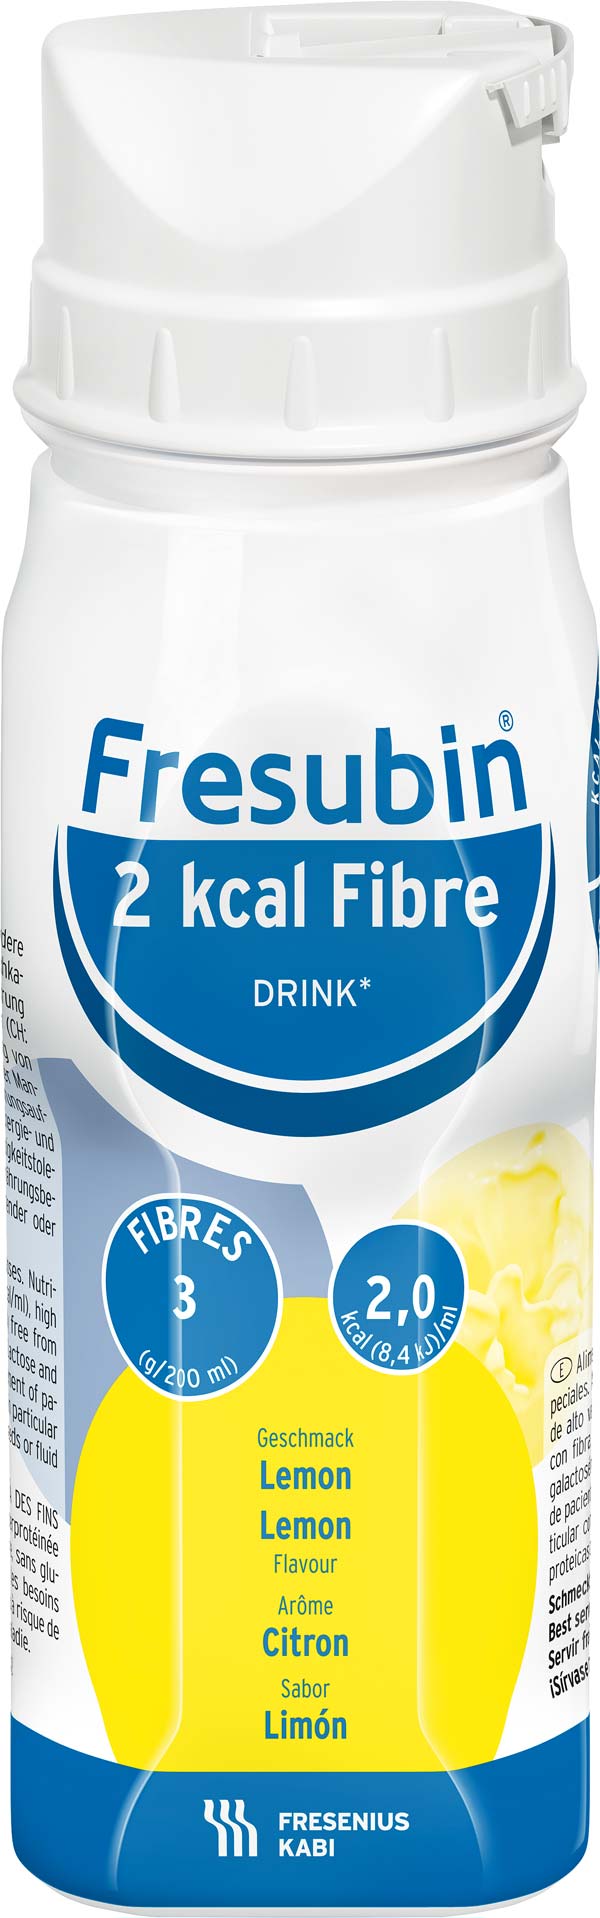 Fresubin 2kcal Fibre Drink Lemon (24x200ml) Trinknahrung - so schmeckt Lebensqualität